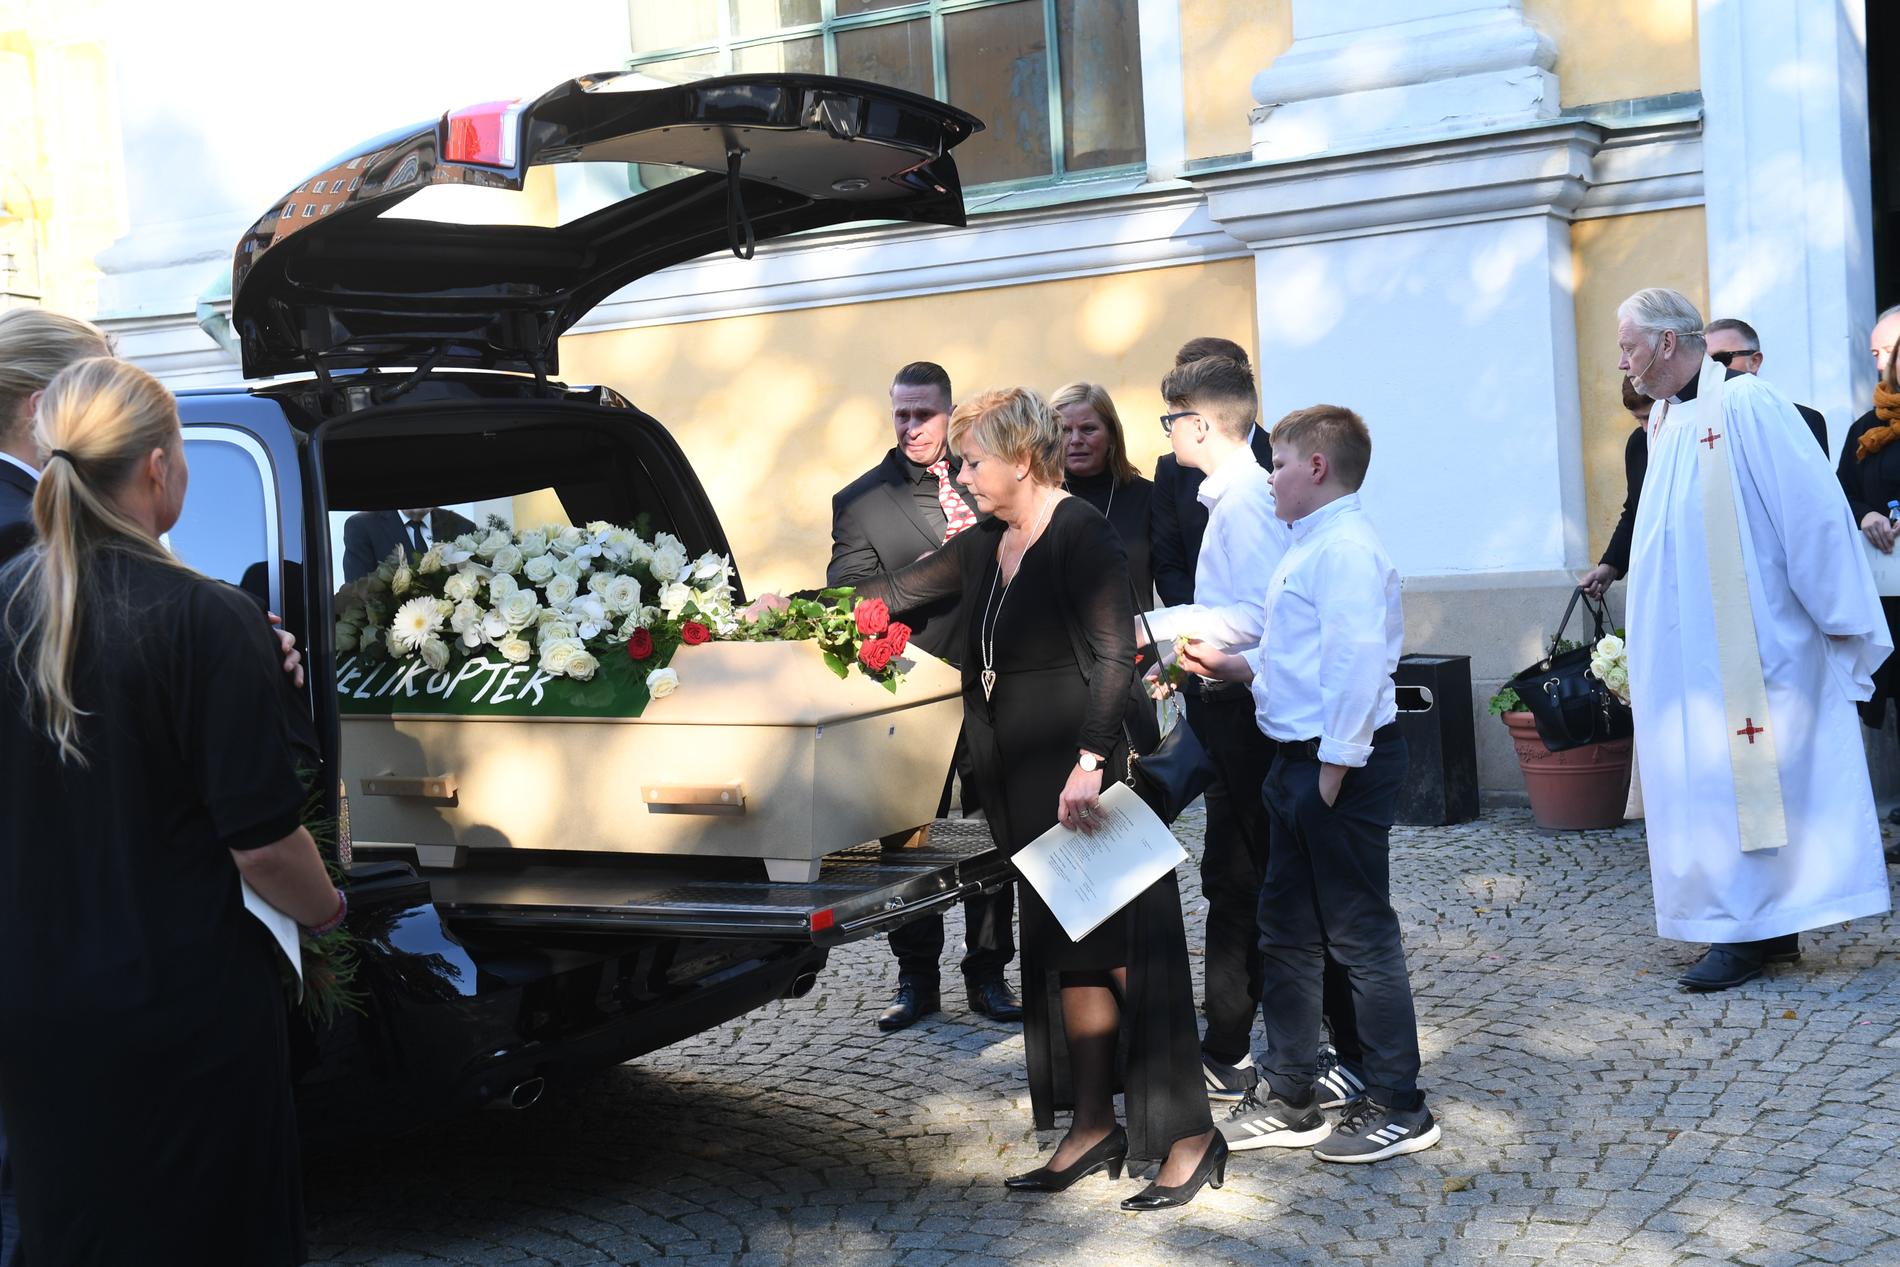 Gurianne Sandven på Janne Loffe Carlssons begravning i Katarina kyrka i Stockholm 2017.